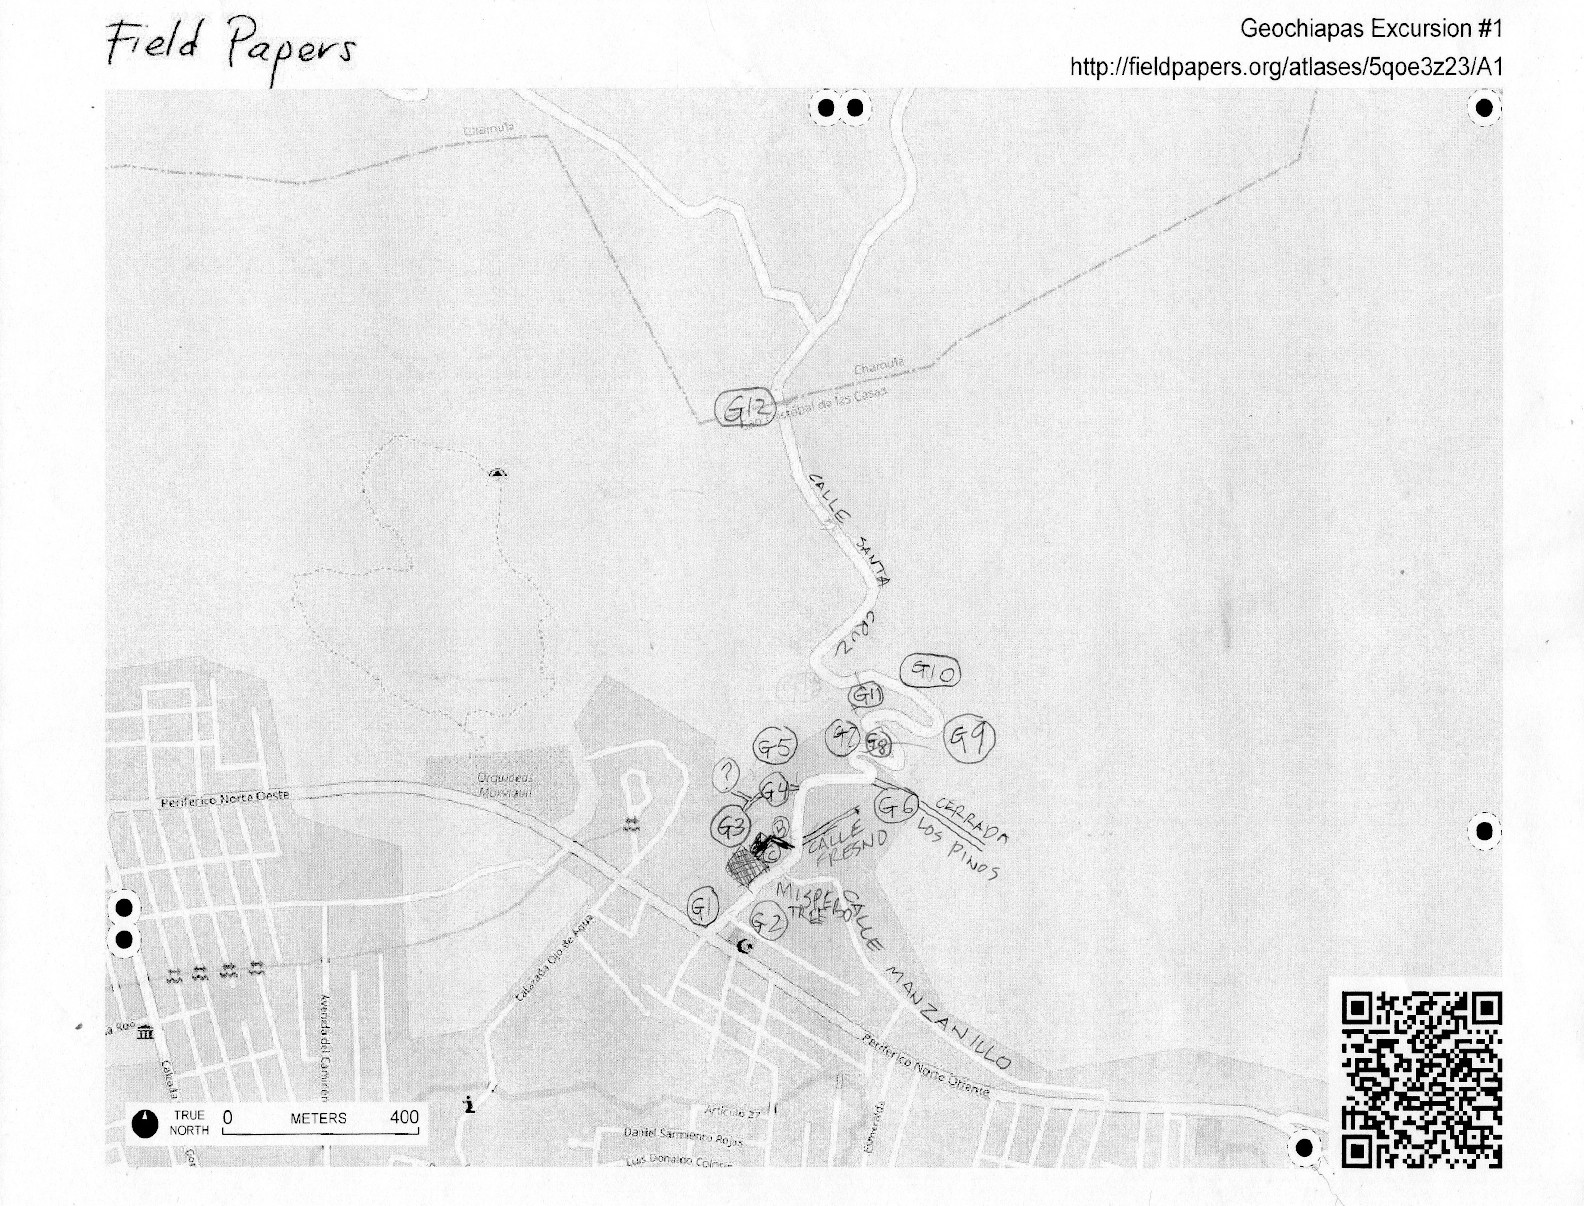 Geochiapas Field Paper.jpg